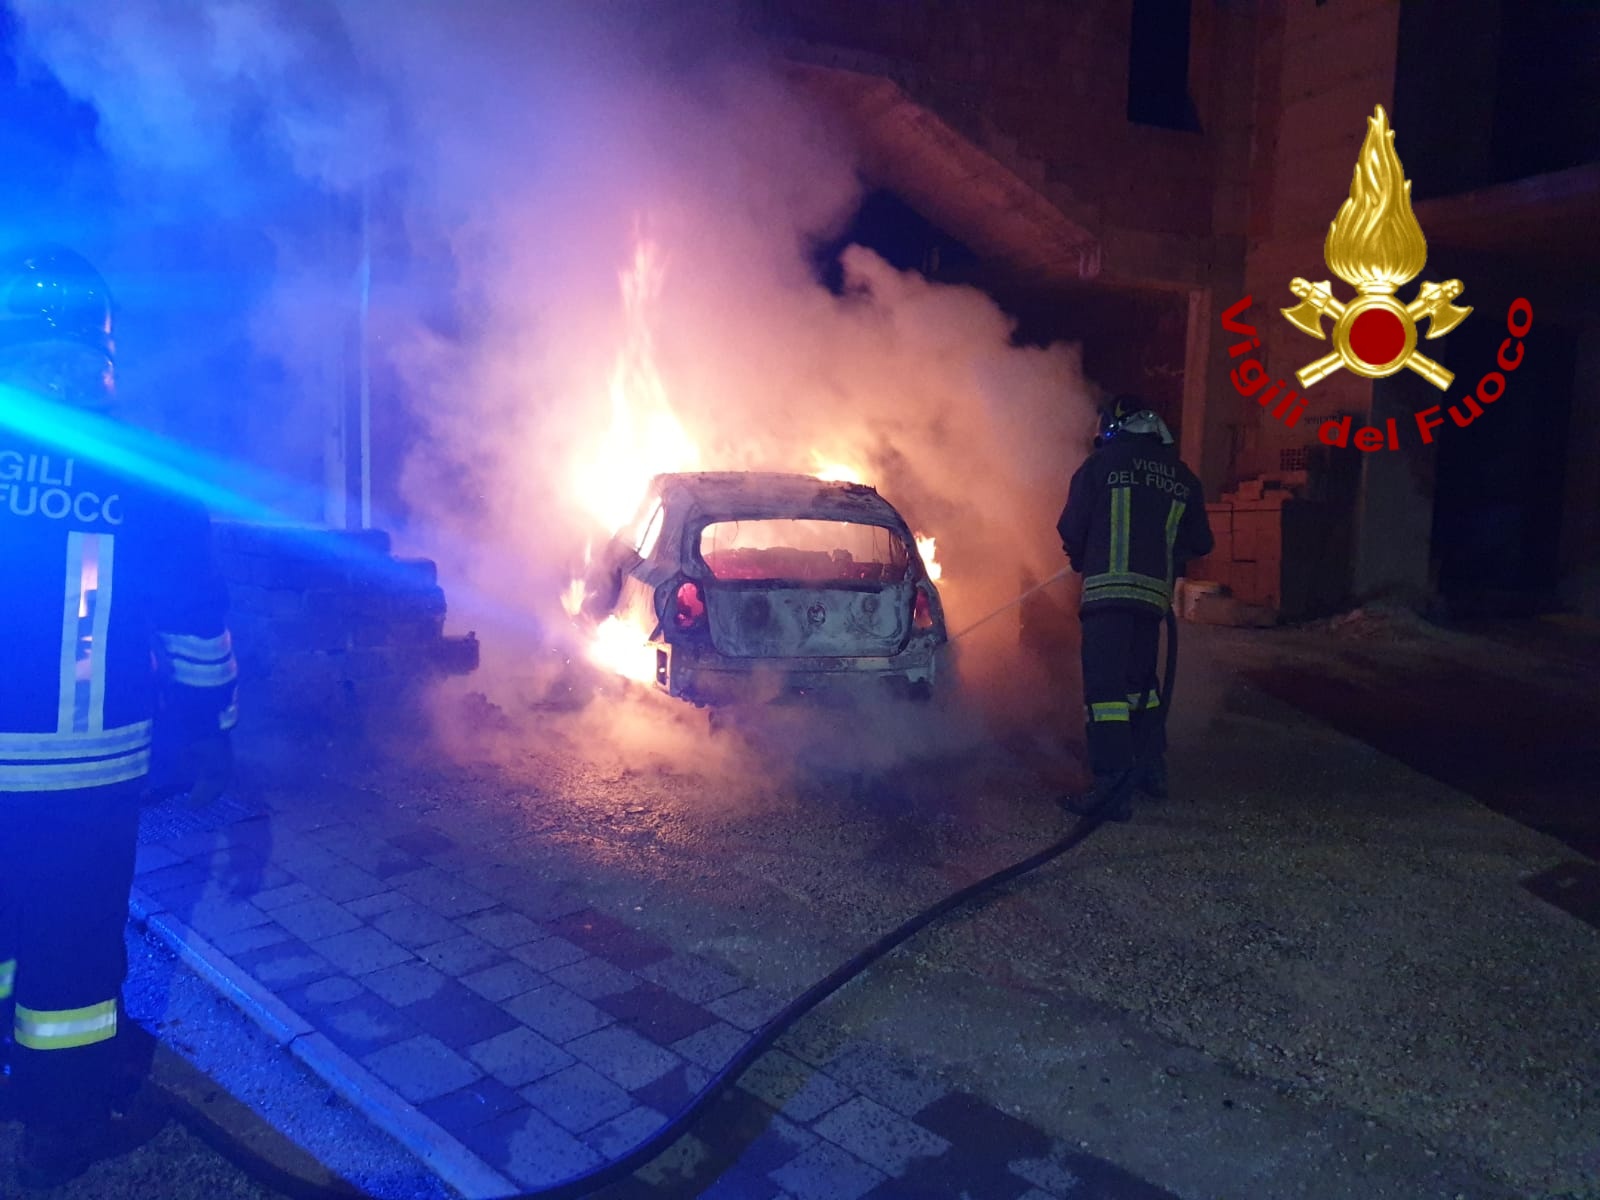 Montefredane| Auto in sosta avvolta dalle fiamme, intervento dei pompieri